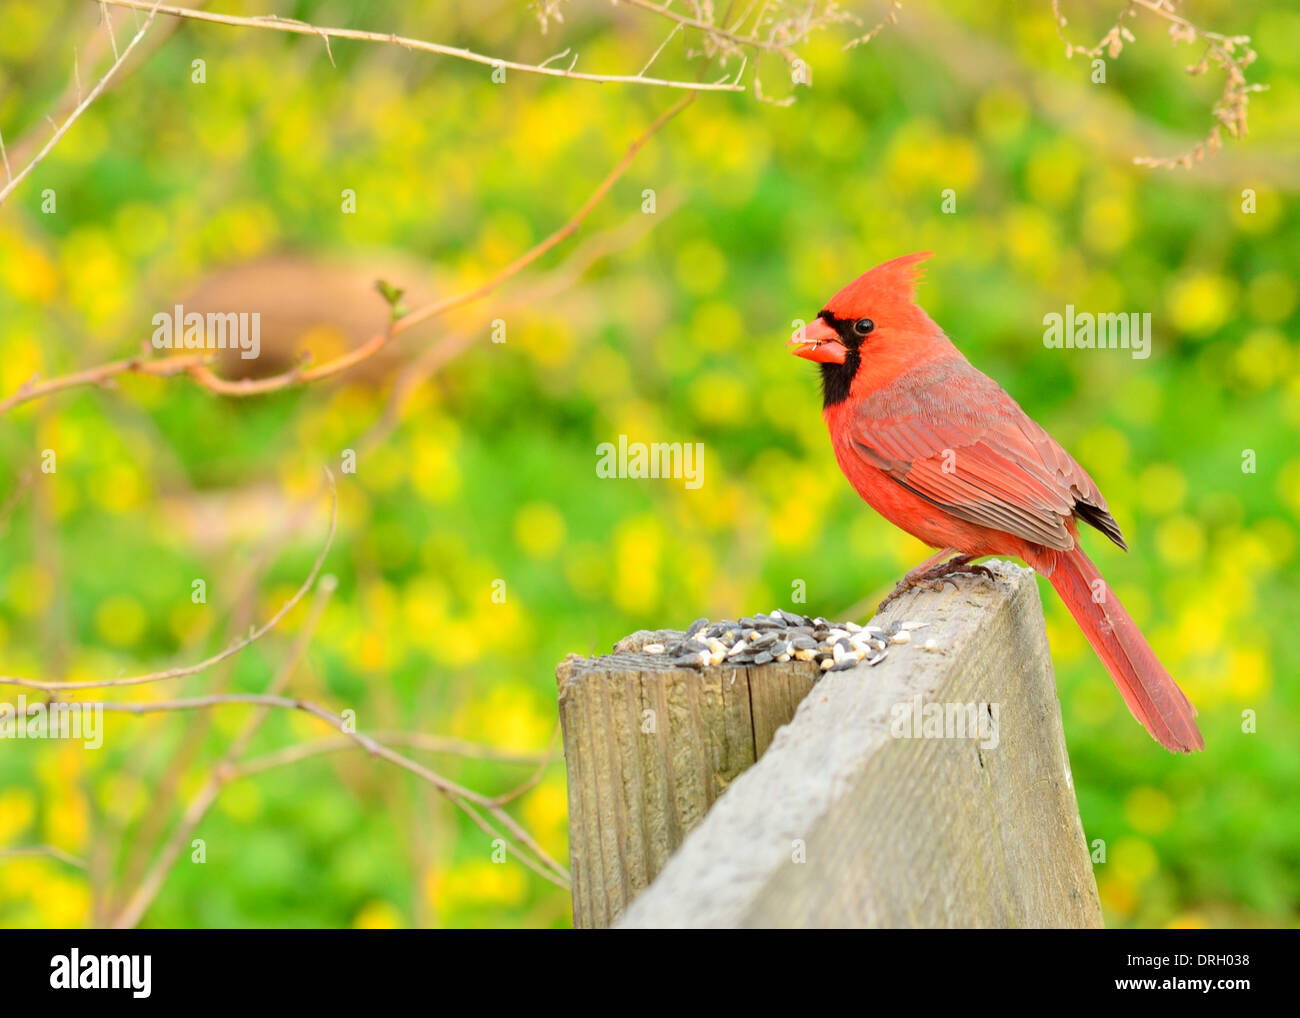 Le Cardinal mâle perché sur une clôture d'alimentation des oiseaux. Banque D'Images